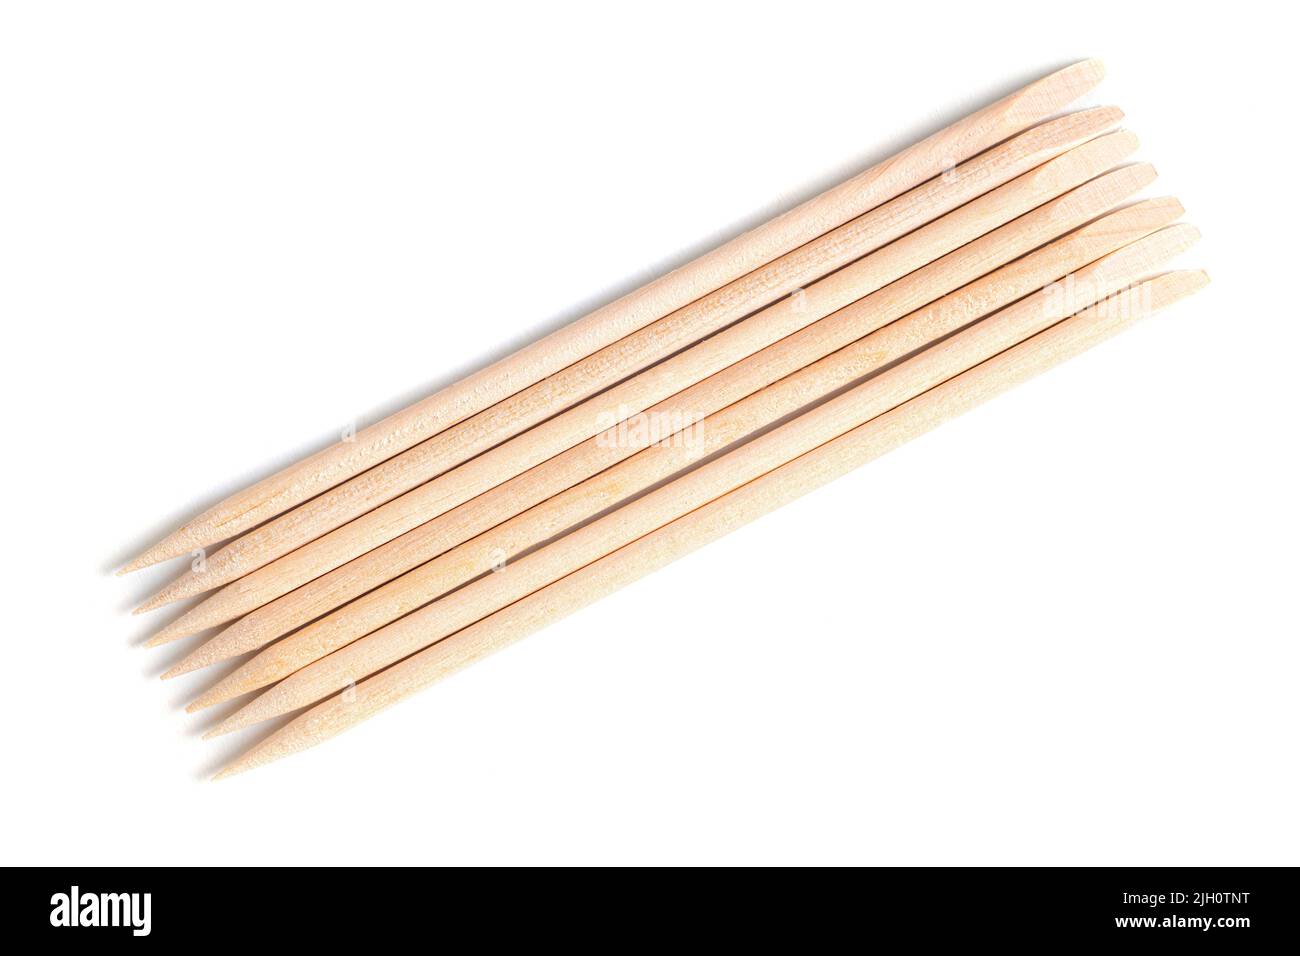 Orange wood cuticle pushers isolated on white background. Manicure instrument. Stock Photo